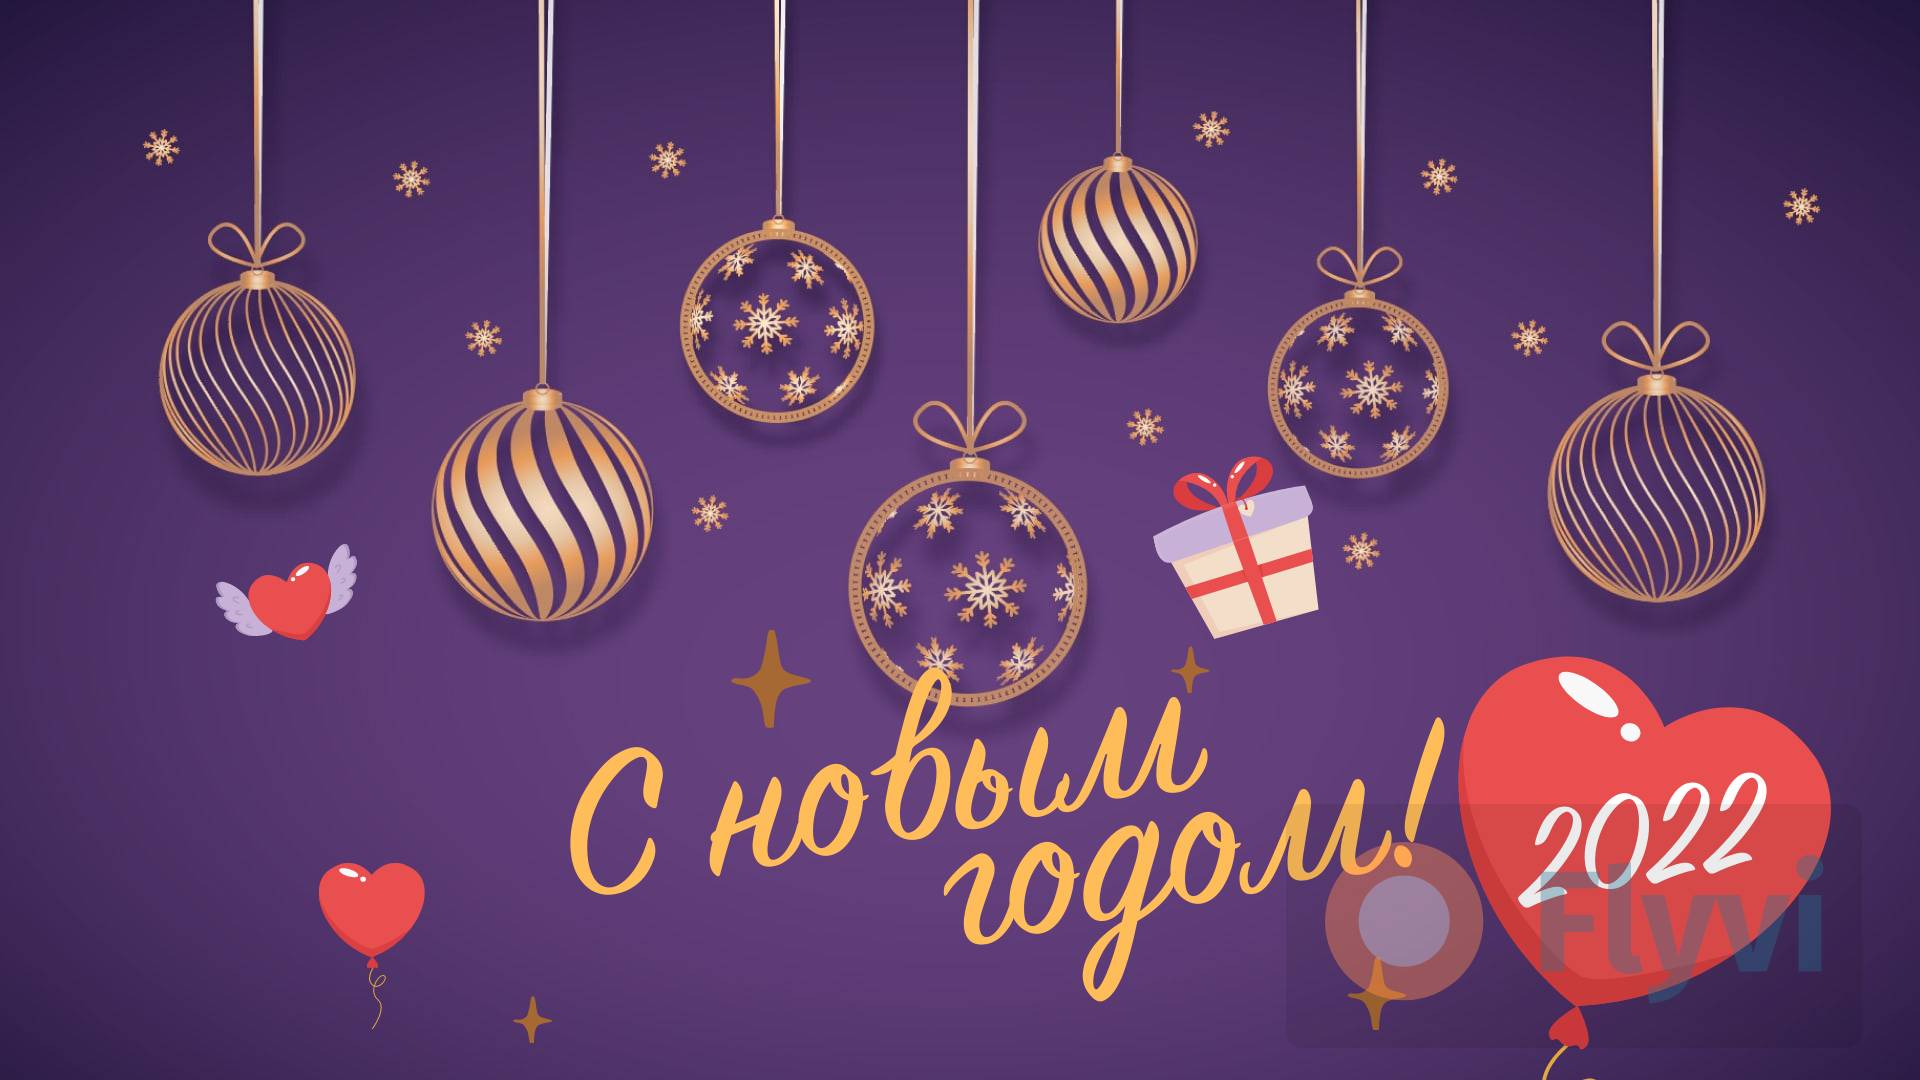 Темно-фиолетовый пост с Новым годом! с золотыми резными шарами и сердечками